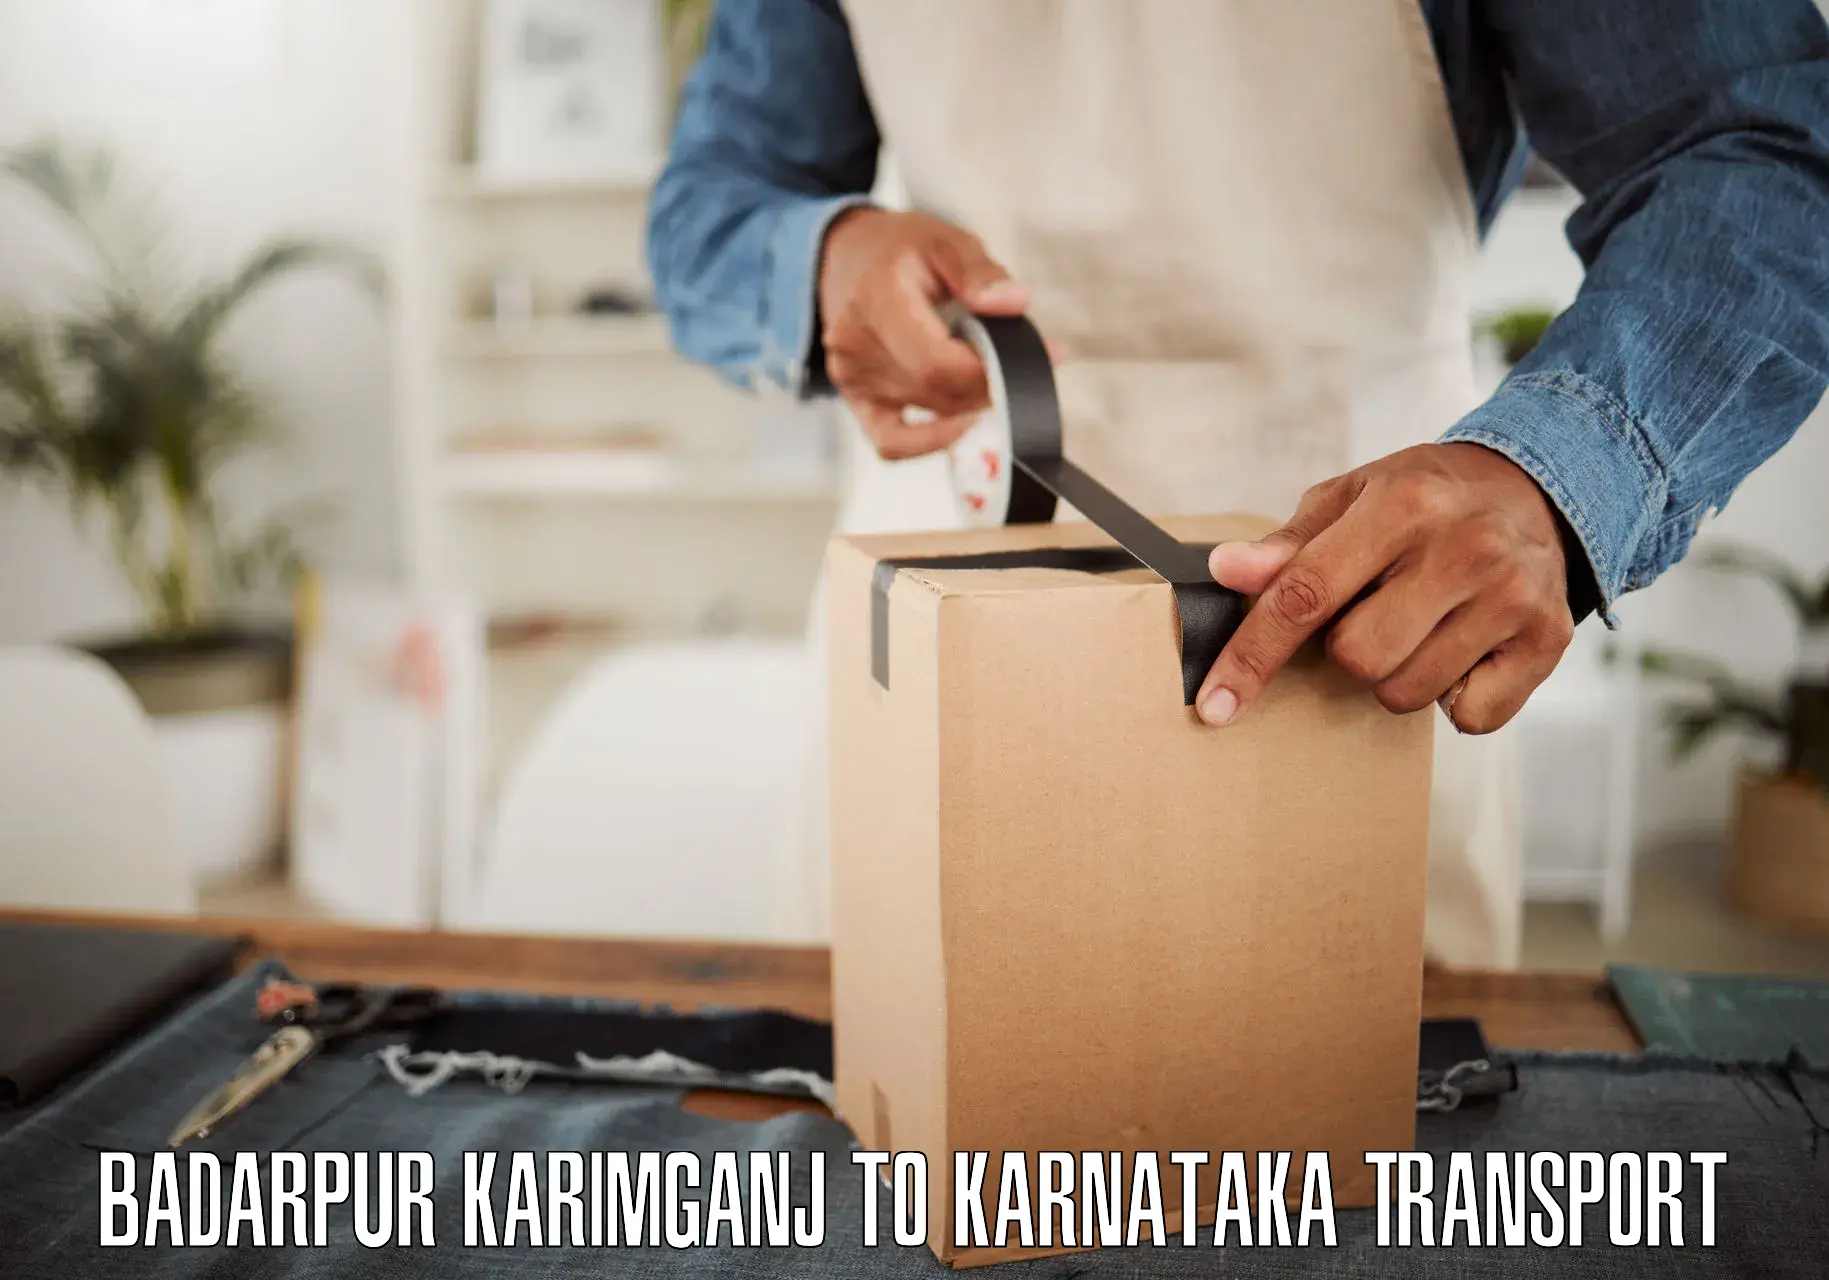 Shipping partner Badarpur Karimganj to Krishnarajanagara